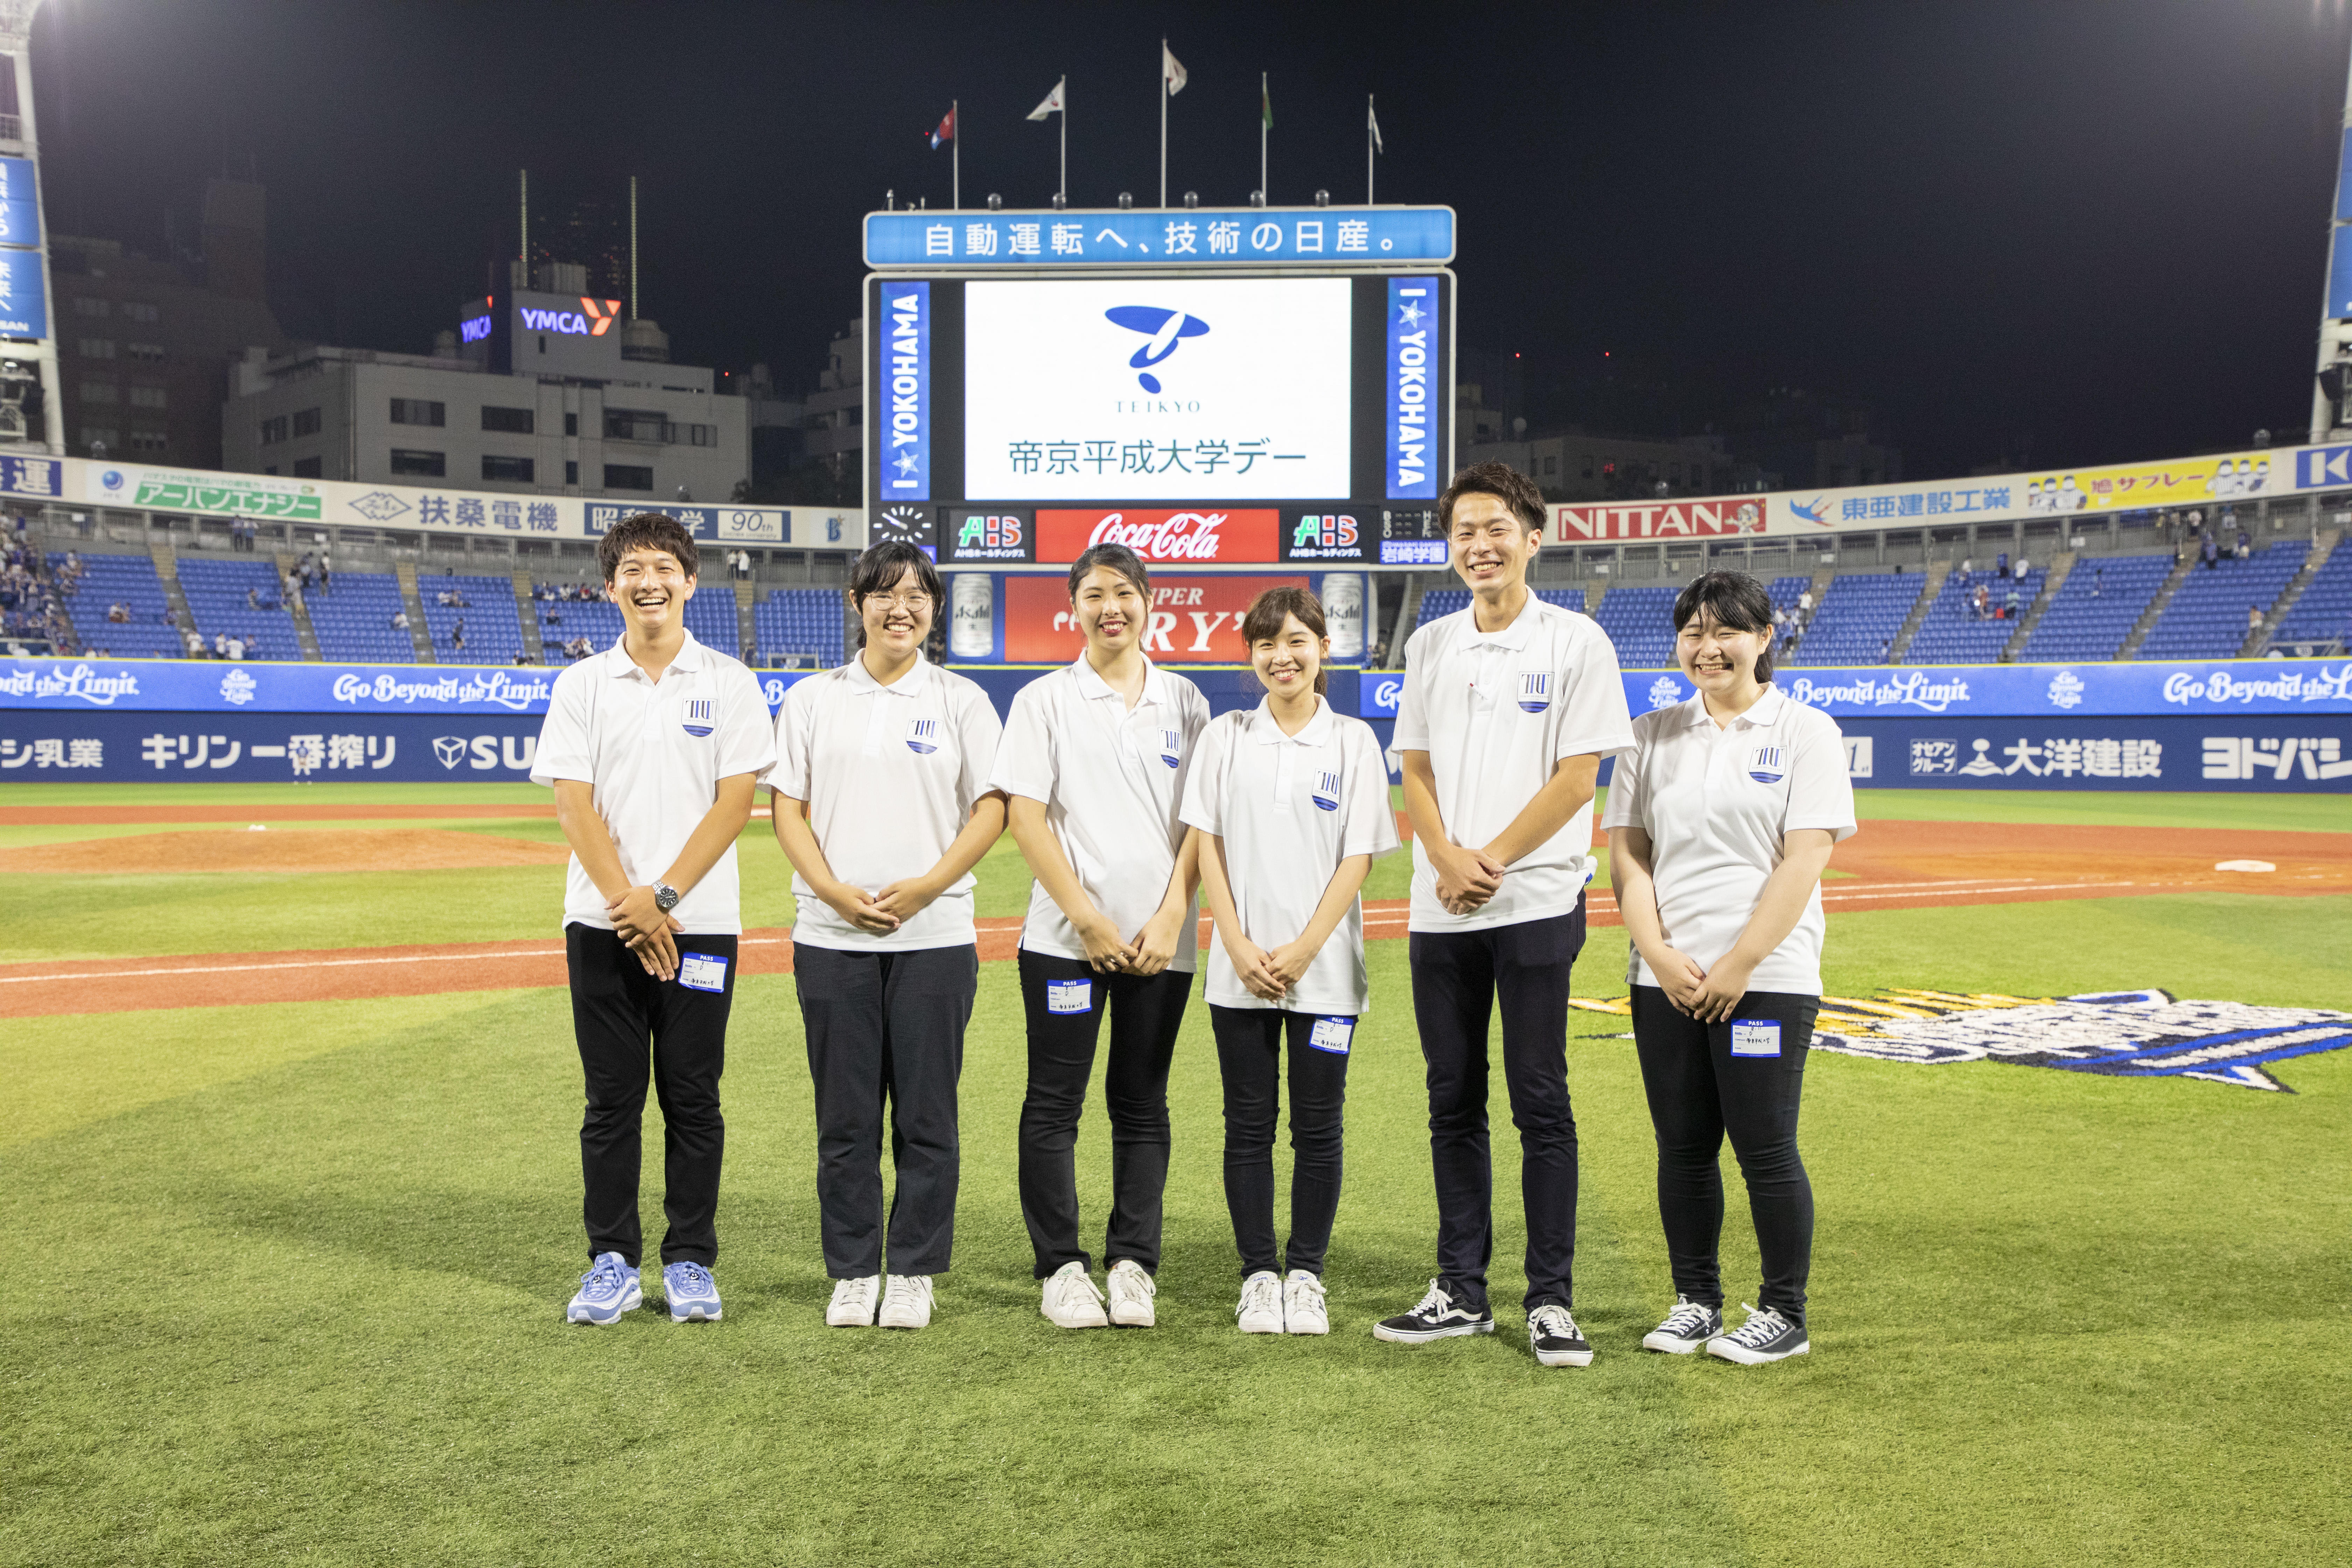 帝京平成大学が横浜DeNAベイスターズのホームゲームで冠試合「帝京平成大学デー」を実施 -- 2020年シーズンは8月29・30日を予定